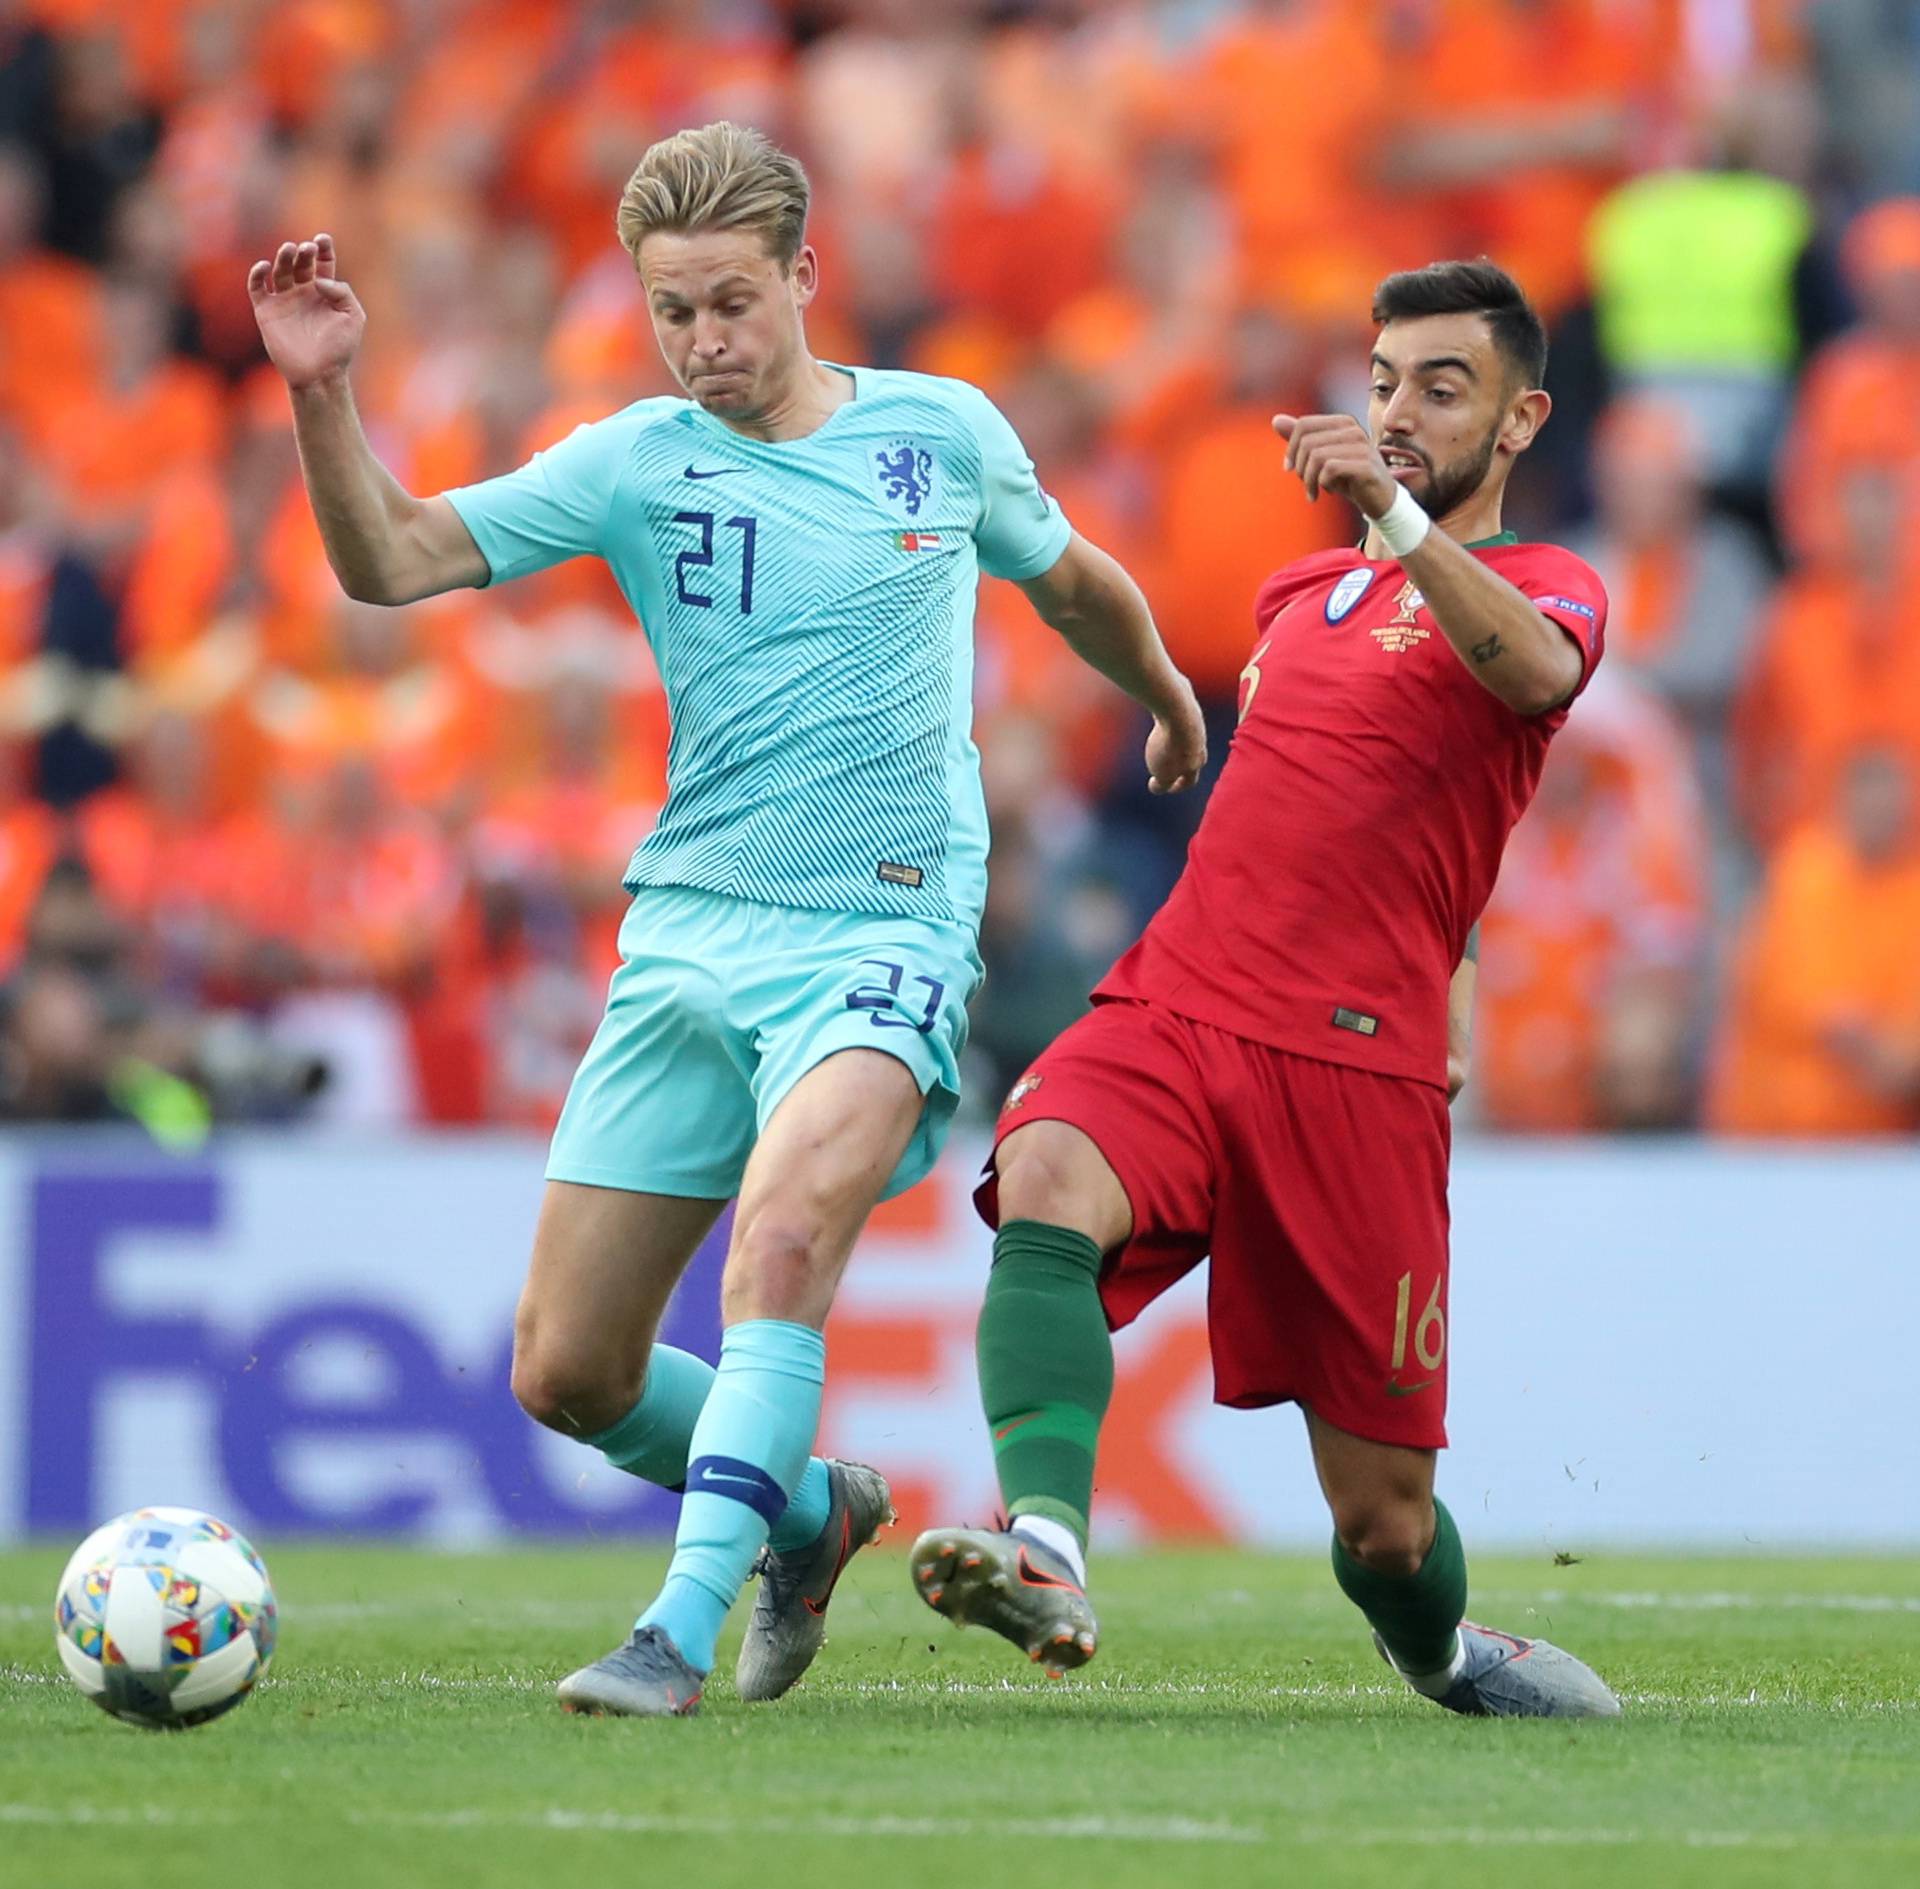 UEFA Nations League Final - Portugal v Netherlands